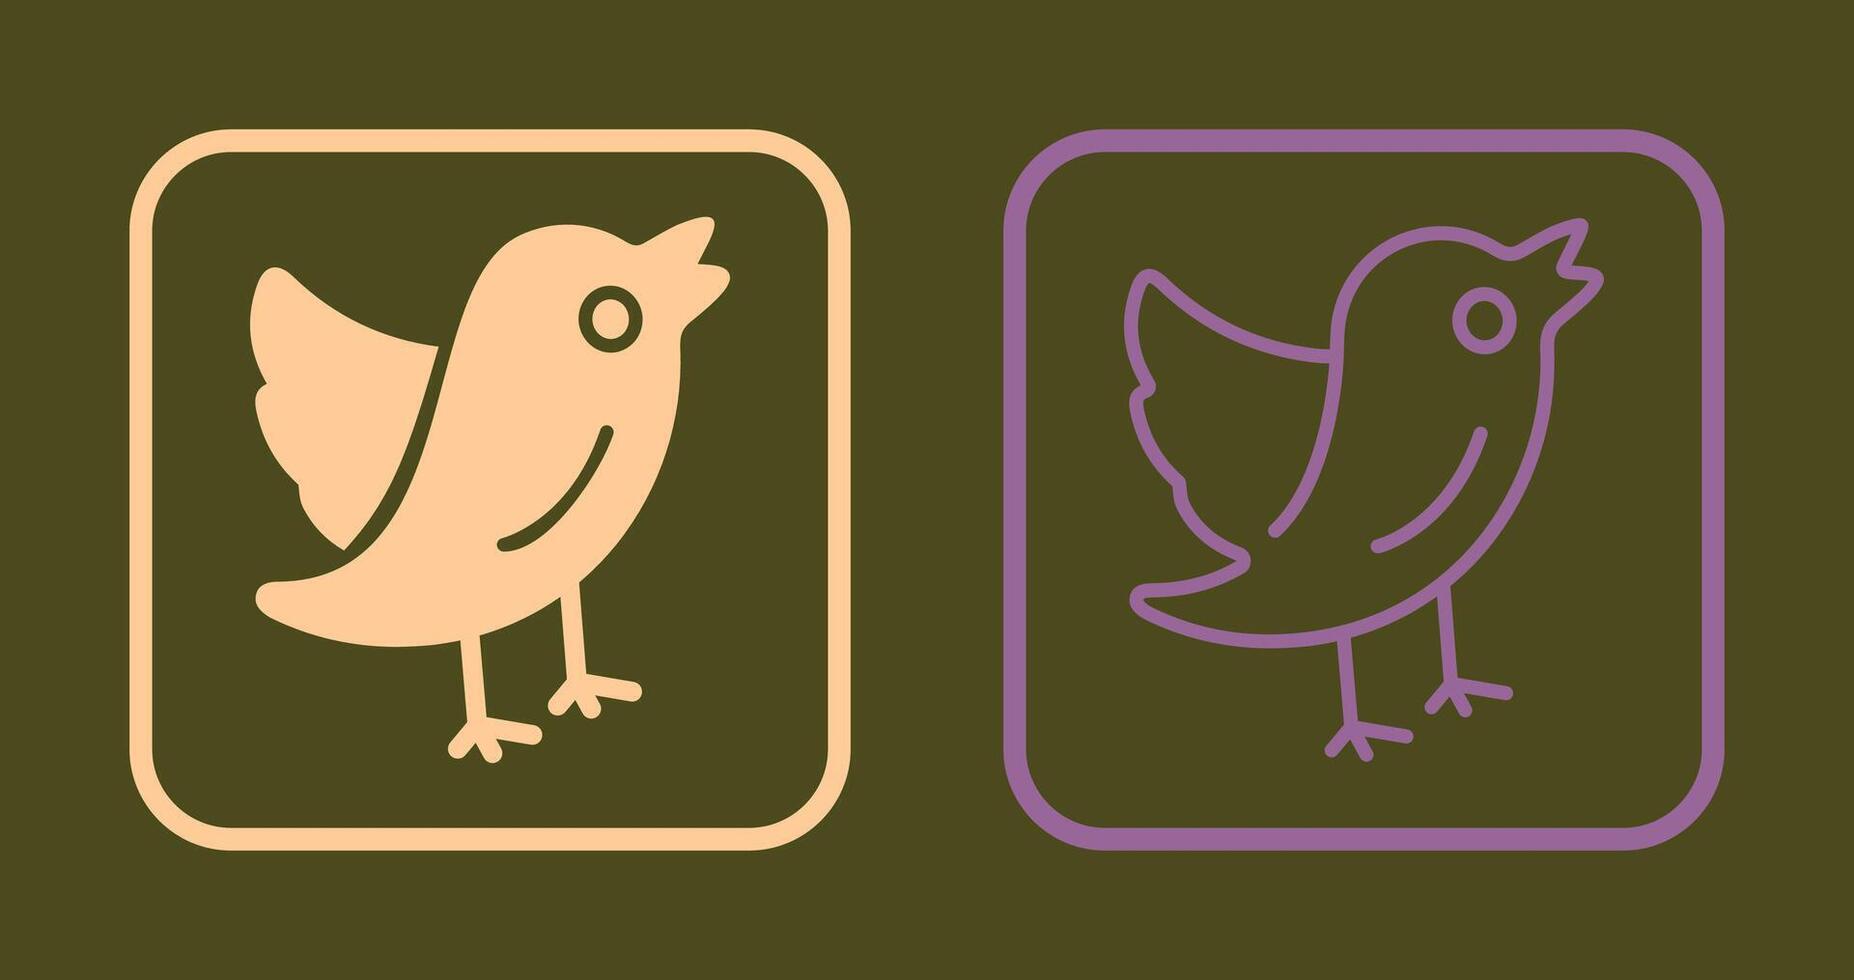 Bird Icon Design vector